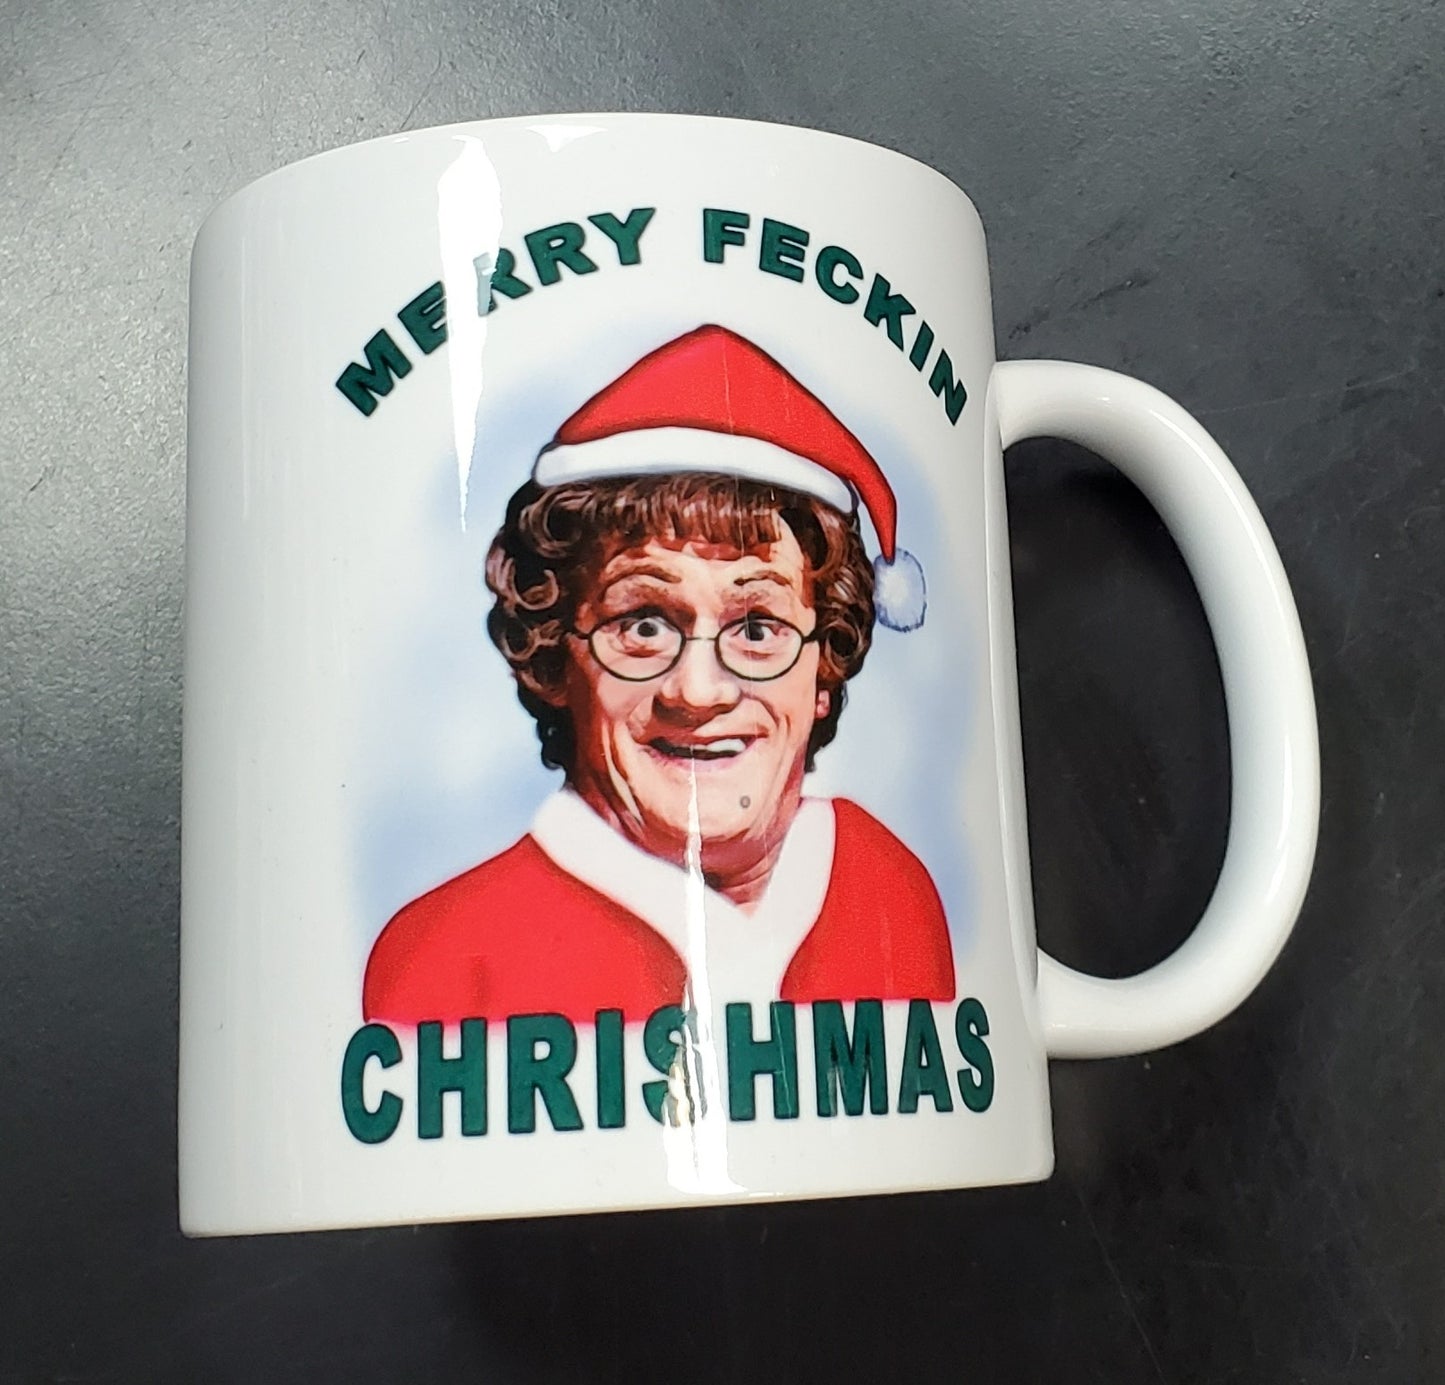 Merry Feckin Chrishmas Mug